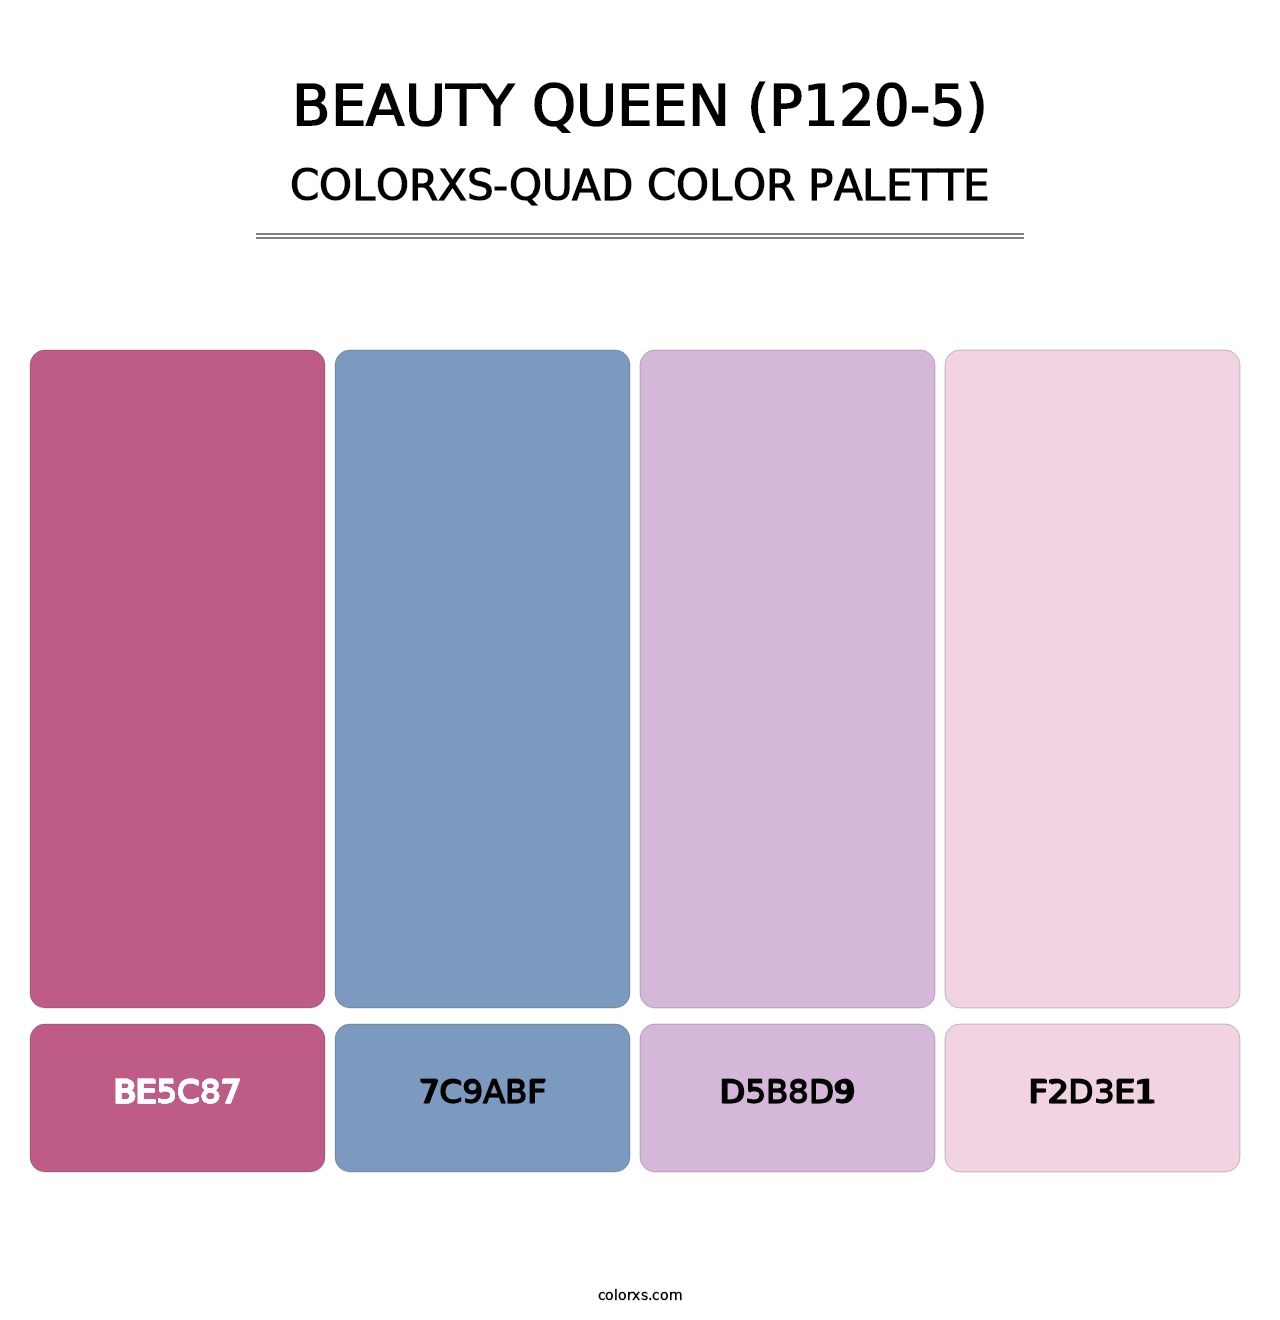 Beauty Queen (P120-5) - Colorxs Quad Palette